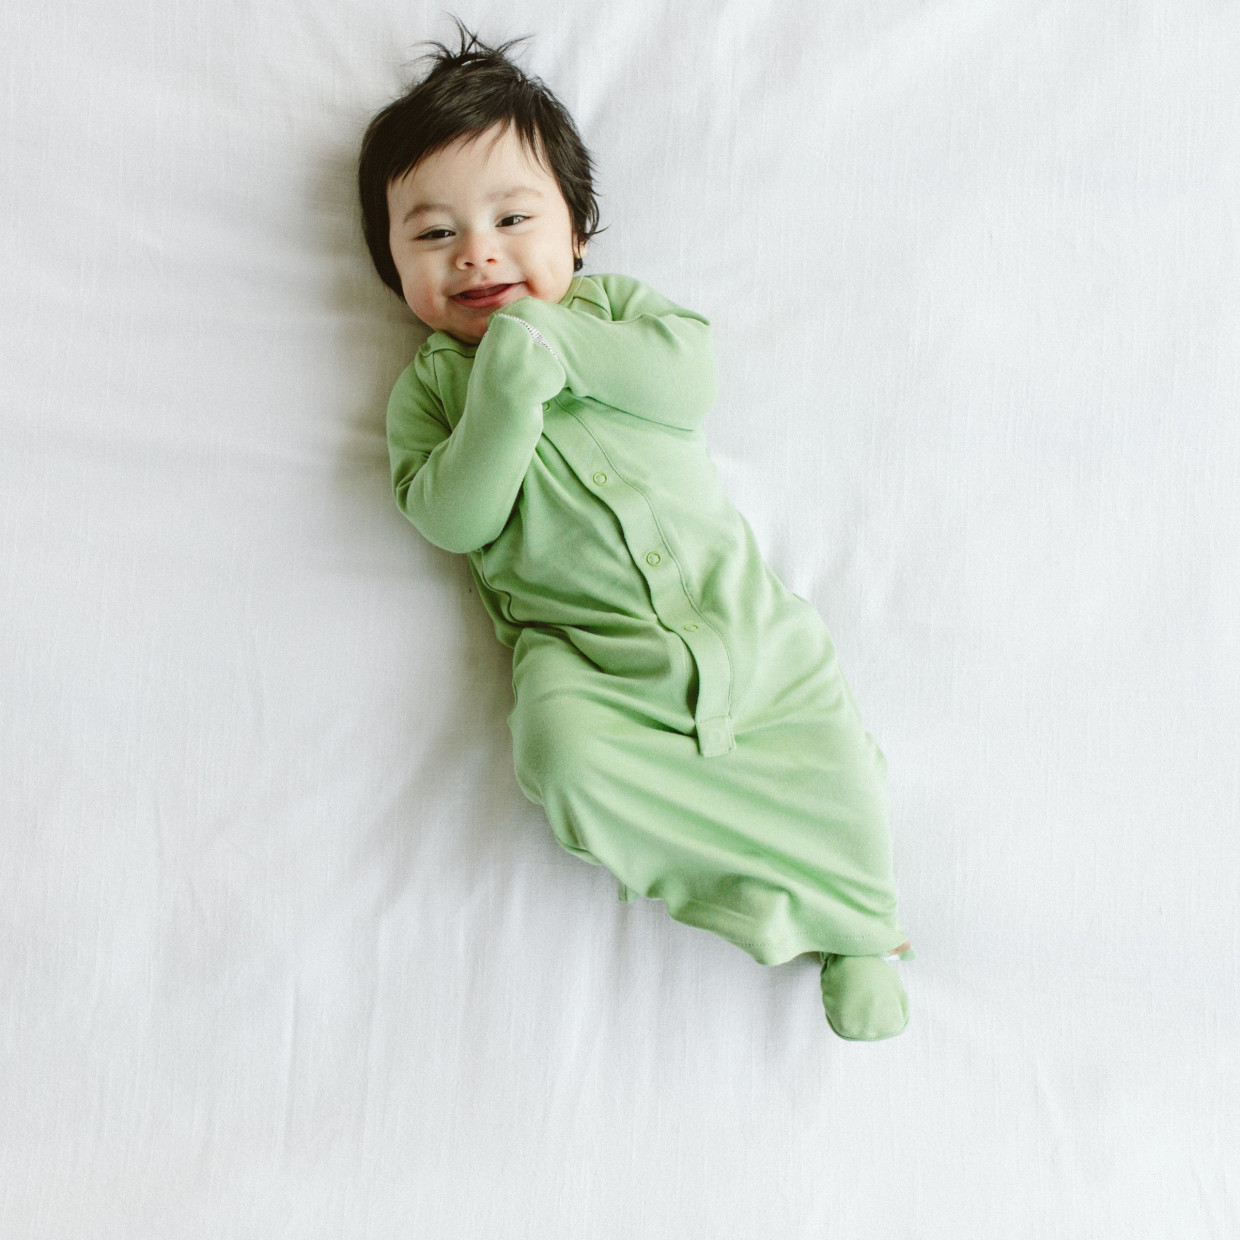 Goumi Kids 24 hr Convertible Sleeper Baby Gown - Matcha, 0-3 M.